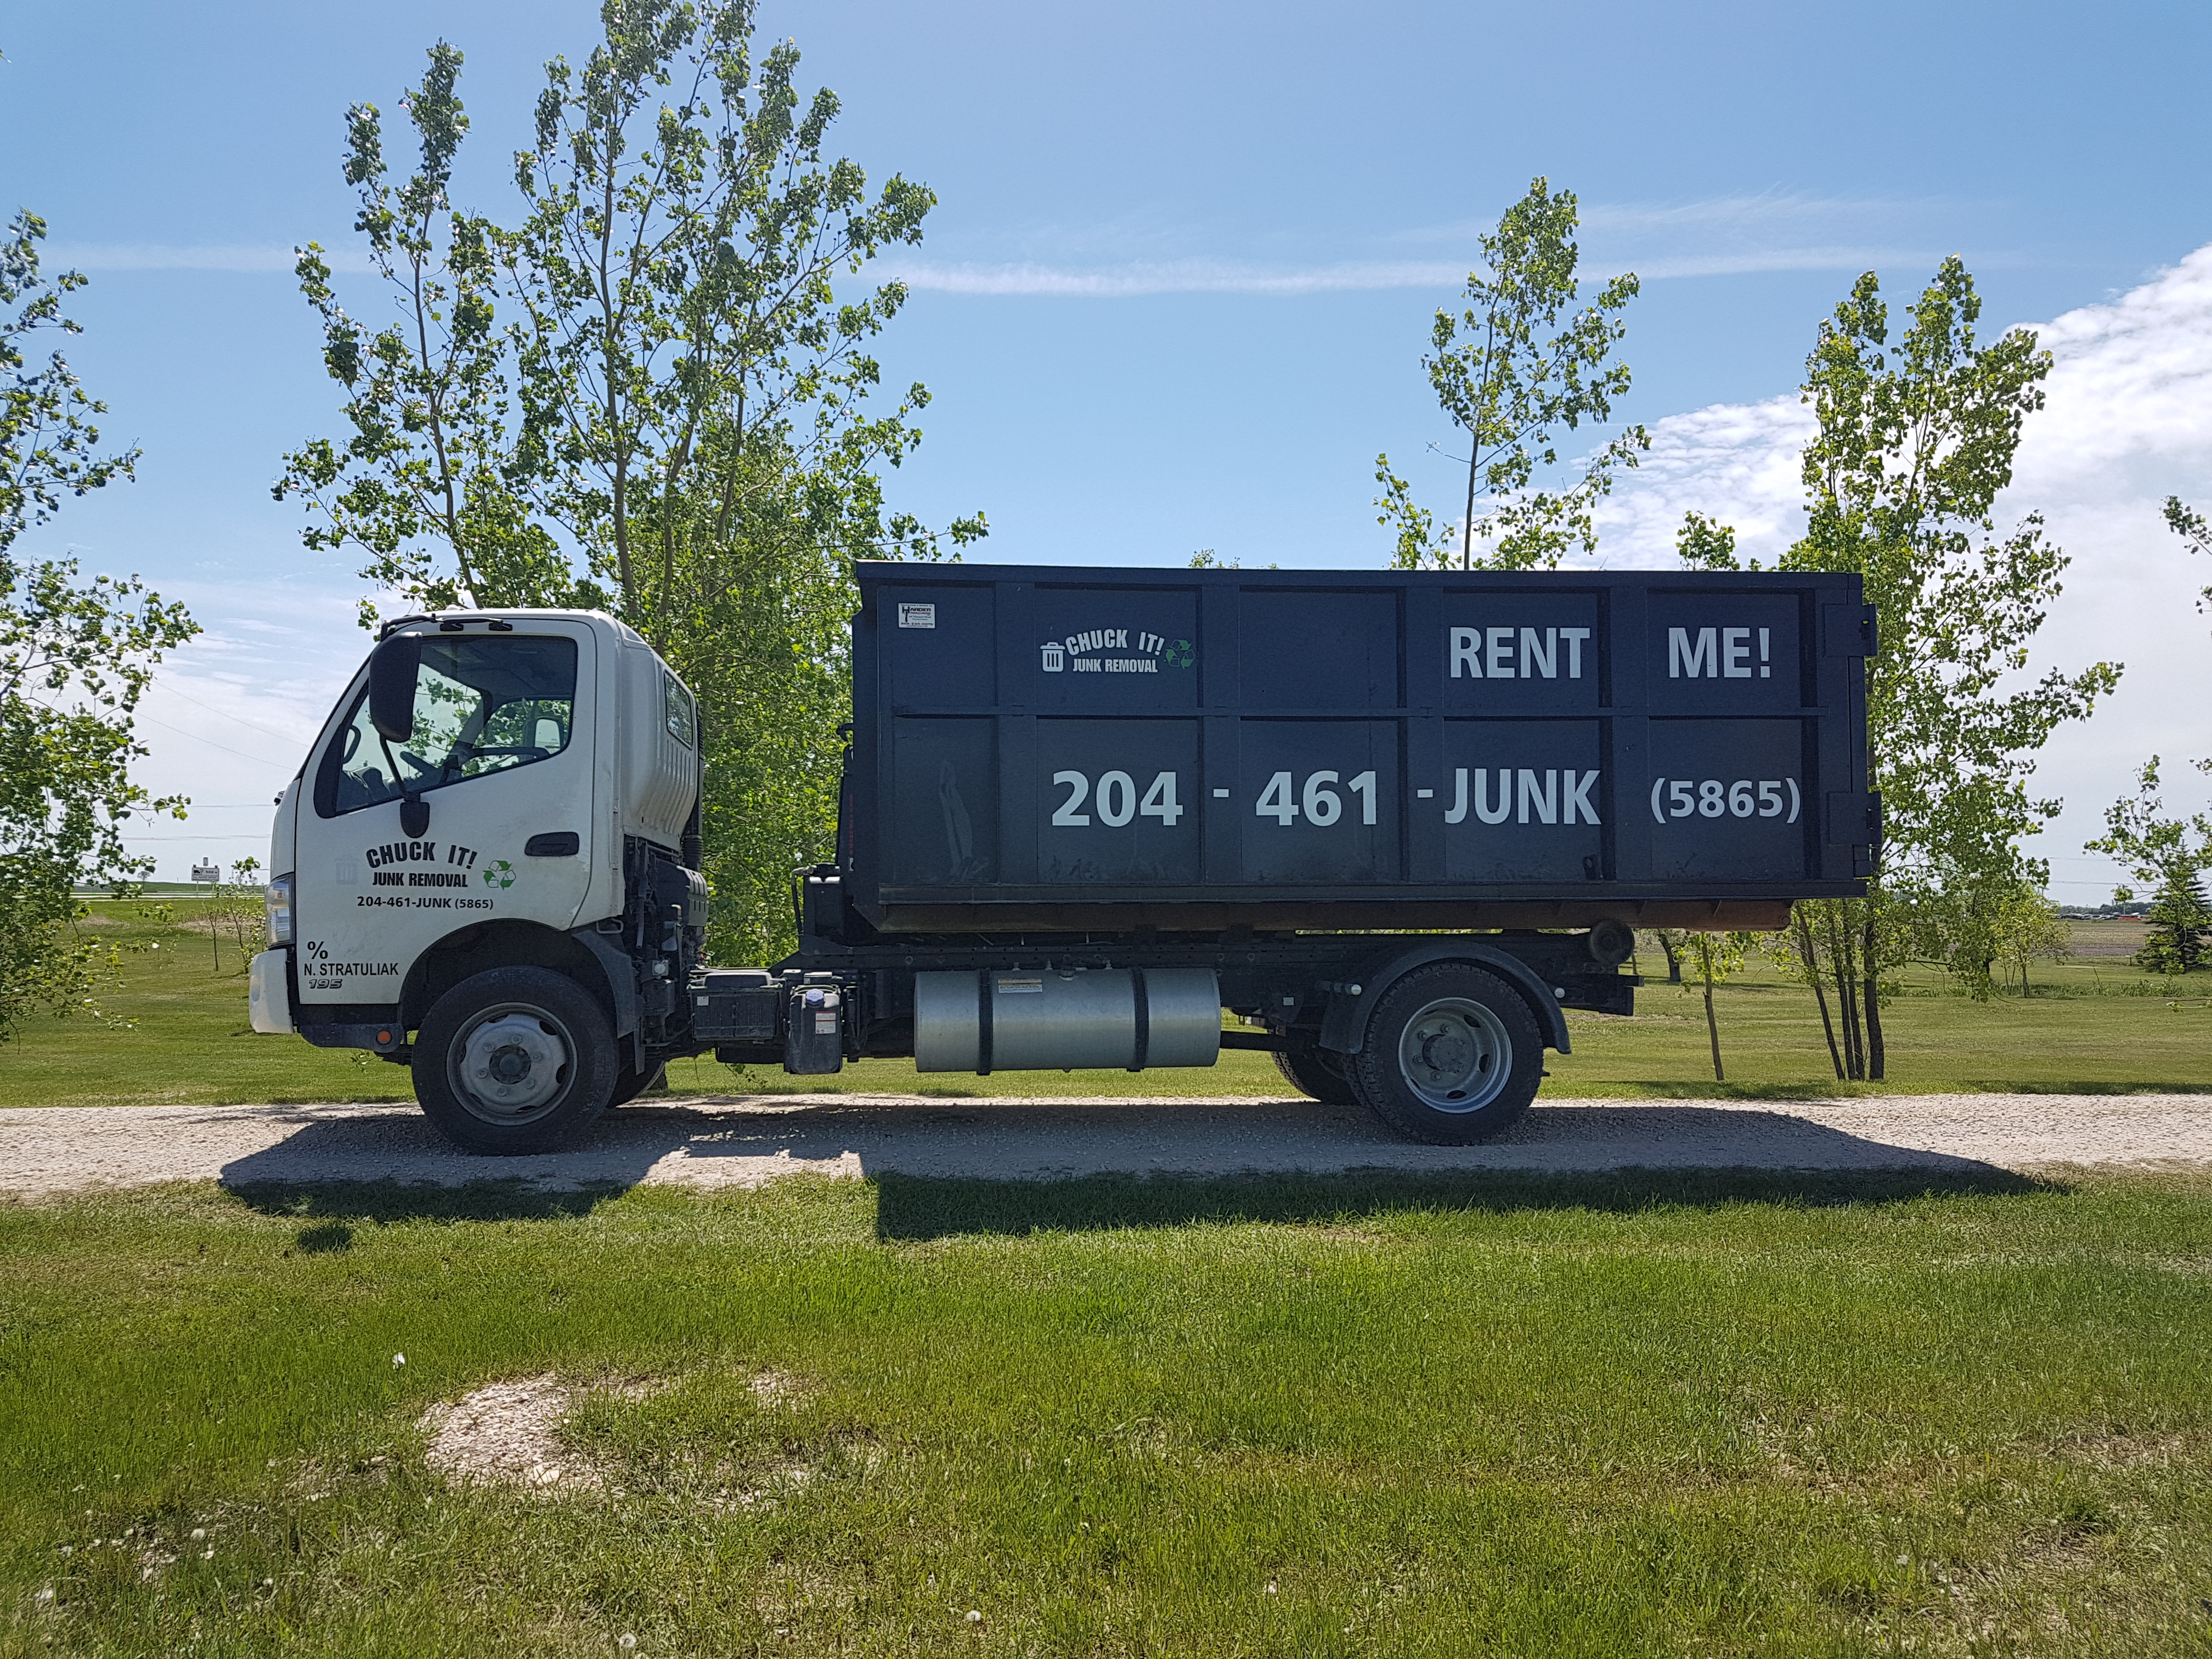 Chuck It junk Removal Winnipeg